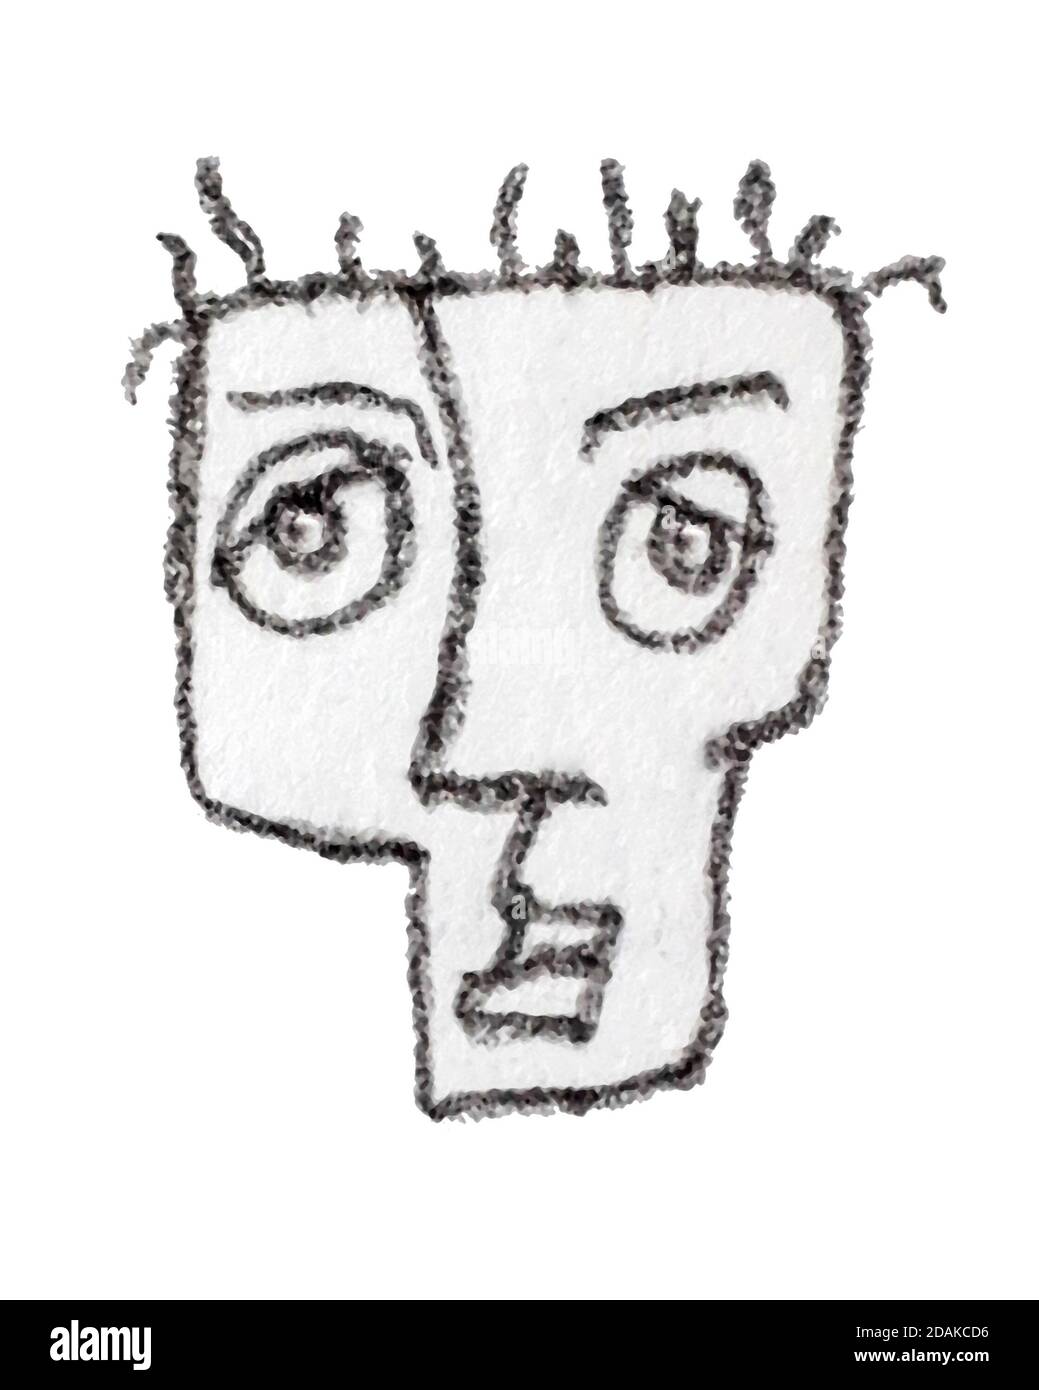 Grau colros Mann Kopf Karikatur Zeichnung isoliert auf weißem Hintergrund Stockfoto